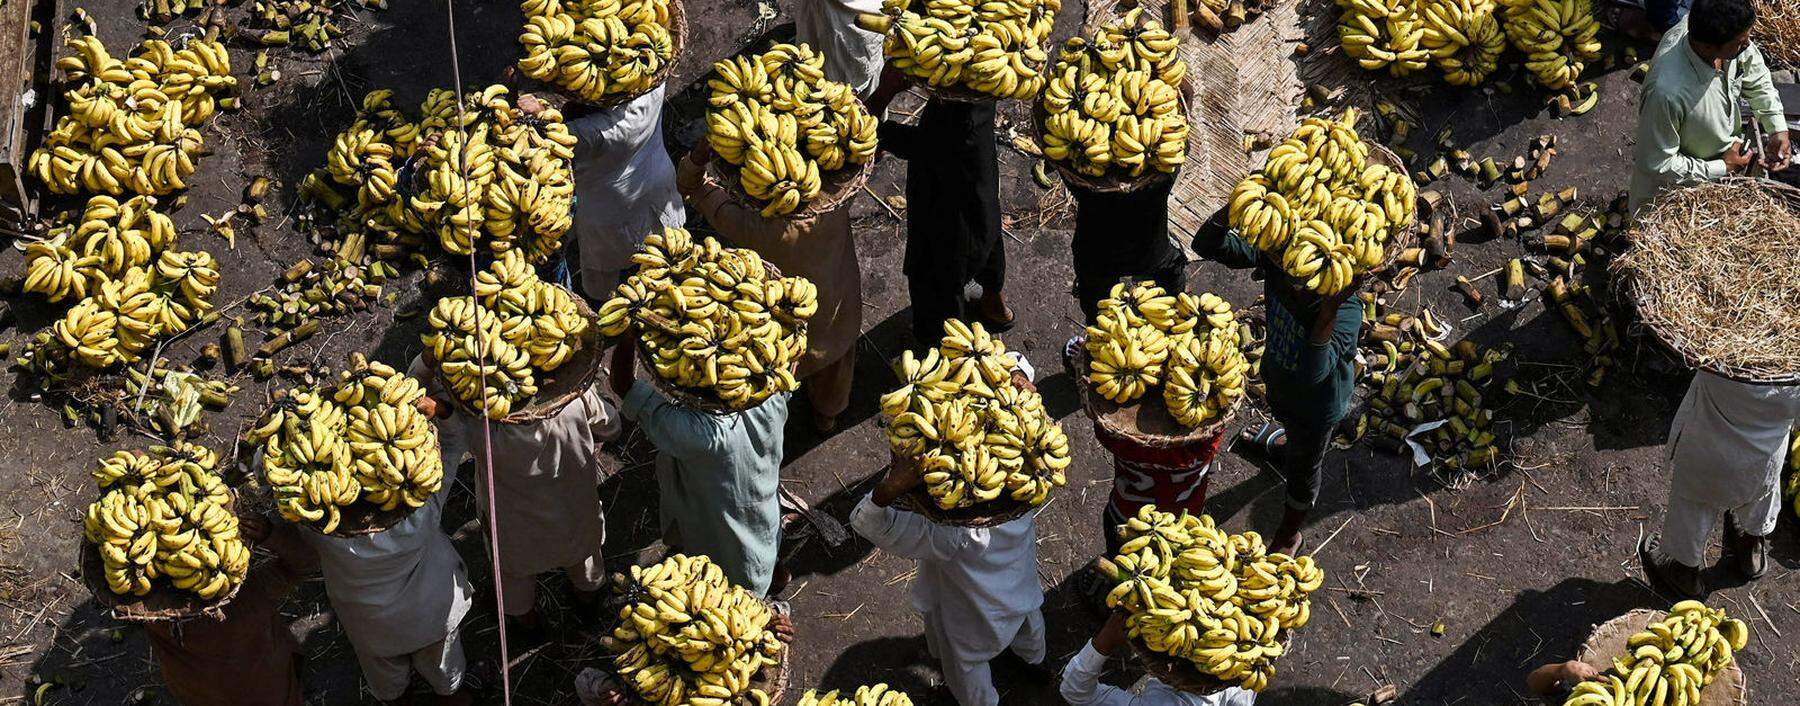 Bananen sind für 450 Millionen Menschen wichtiger Teil ihrer Ernährung. 